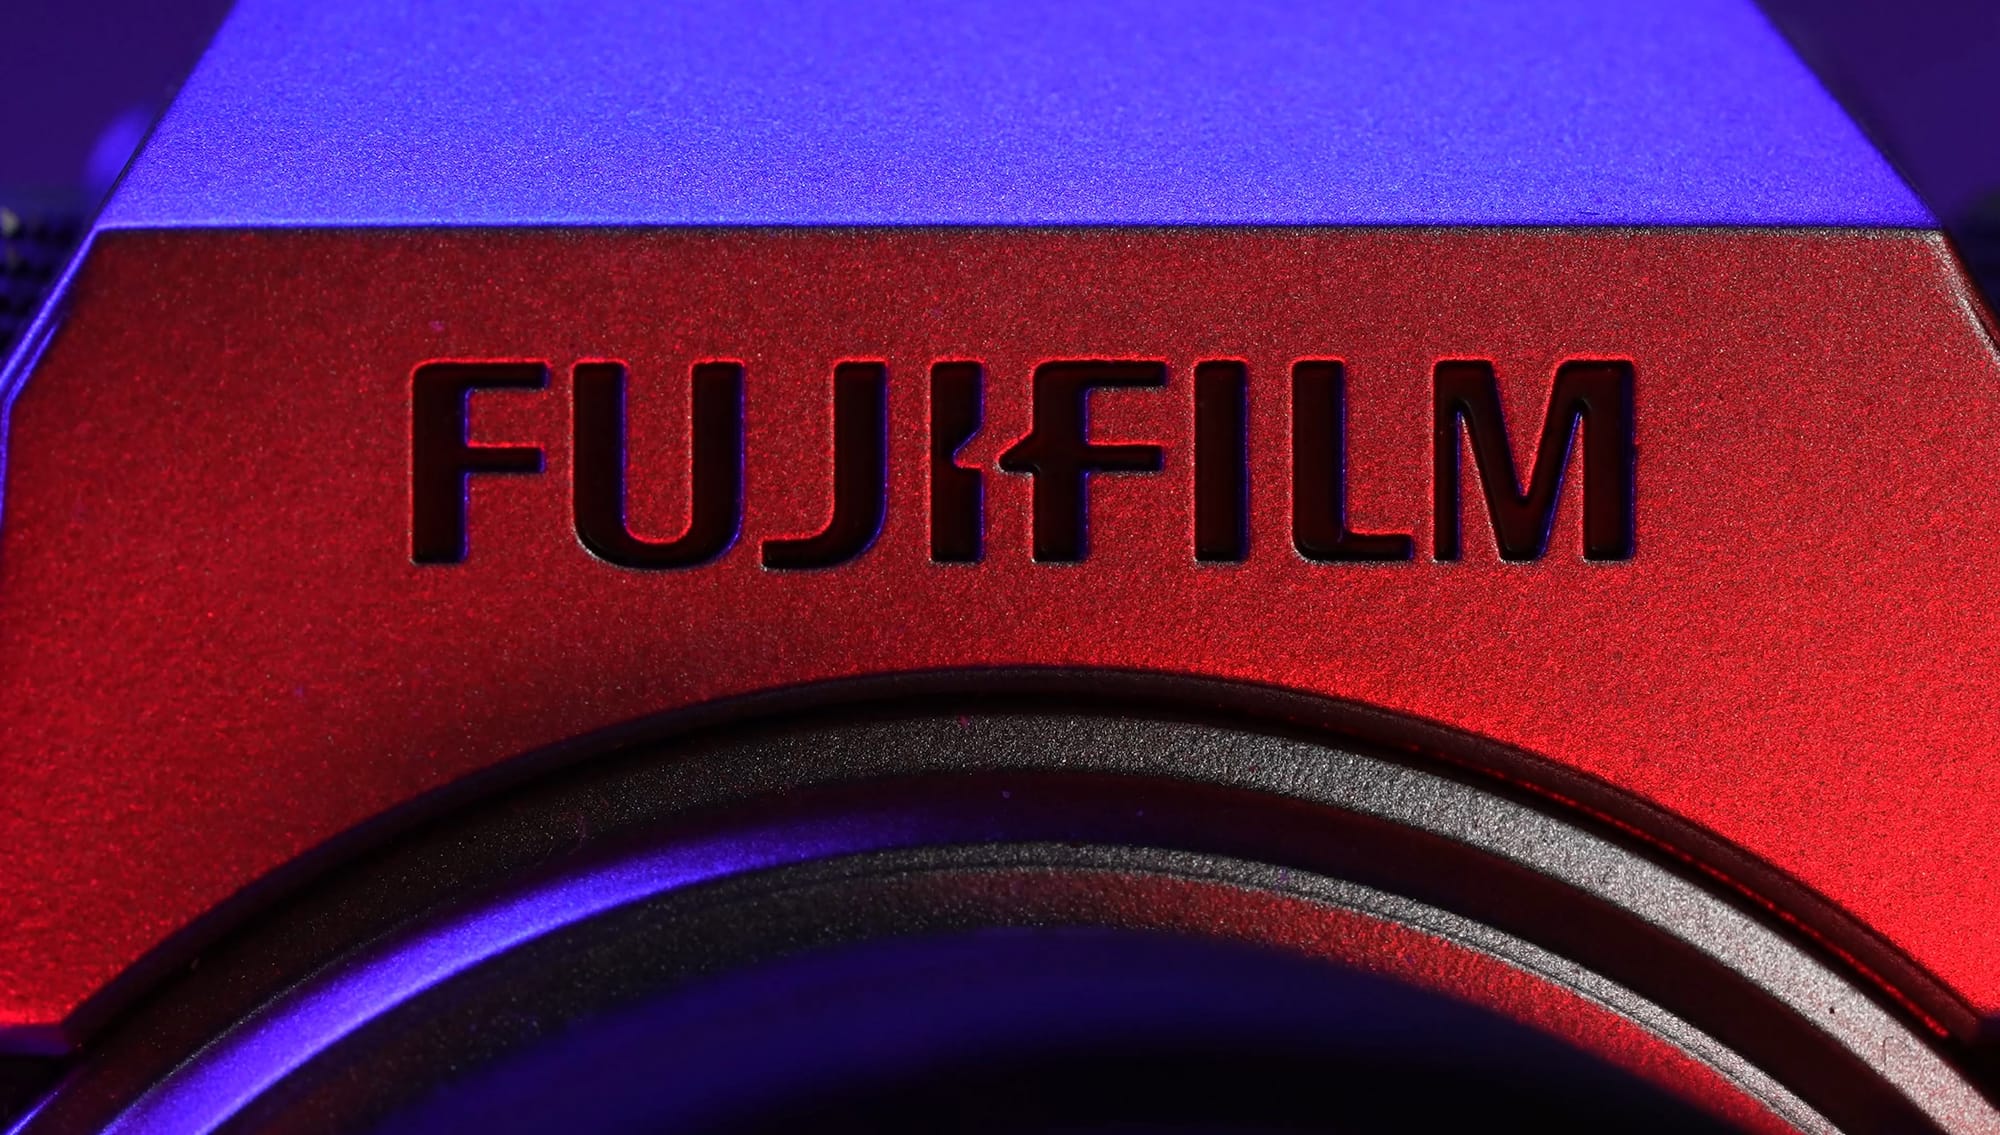 Fujifilm camera in close up